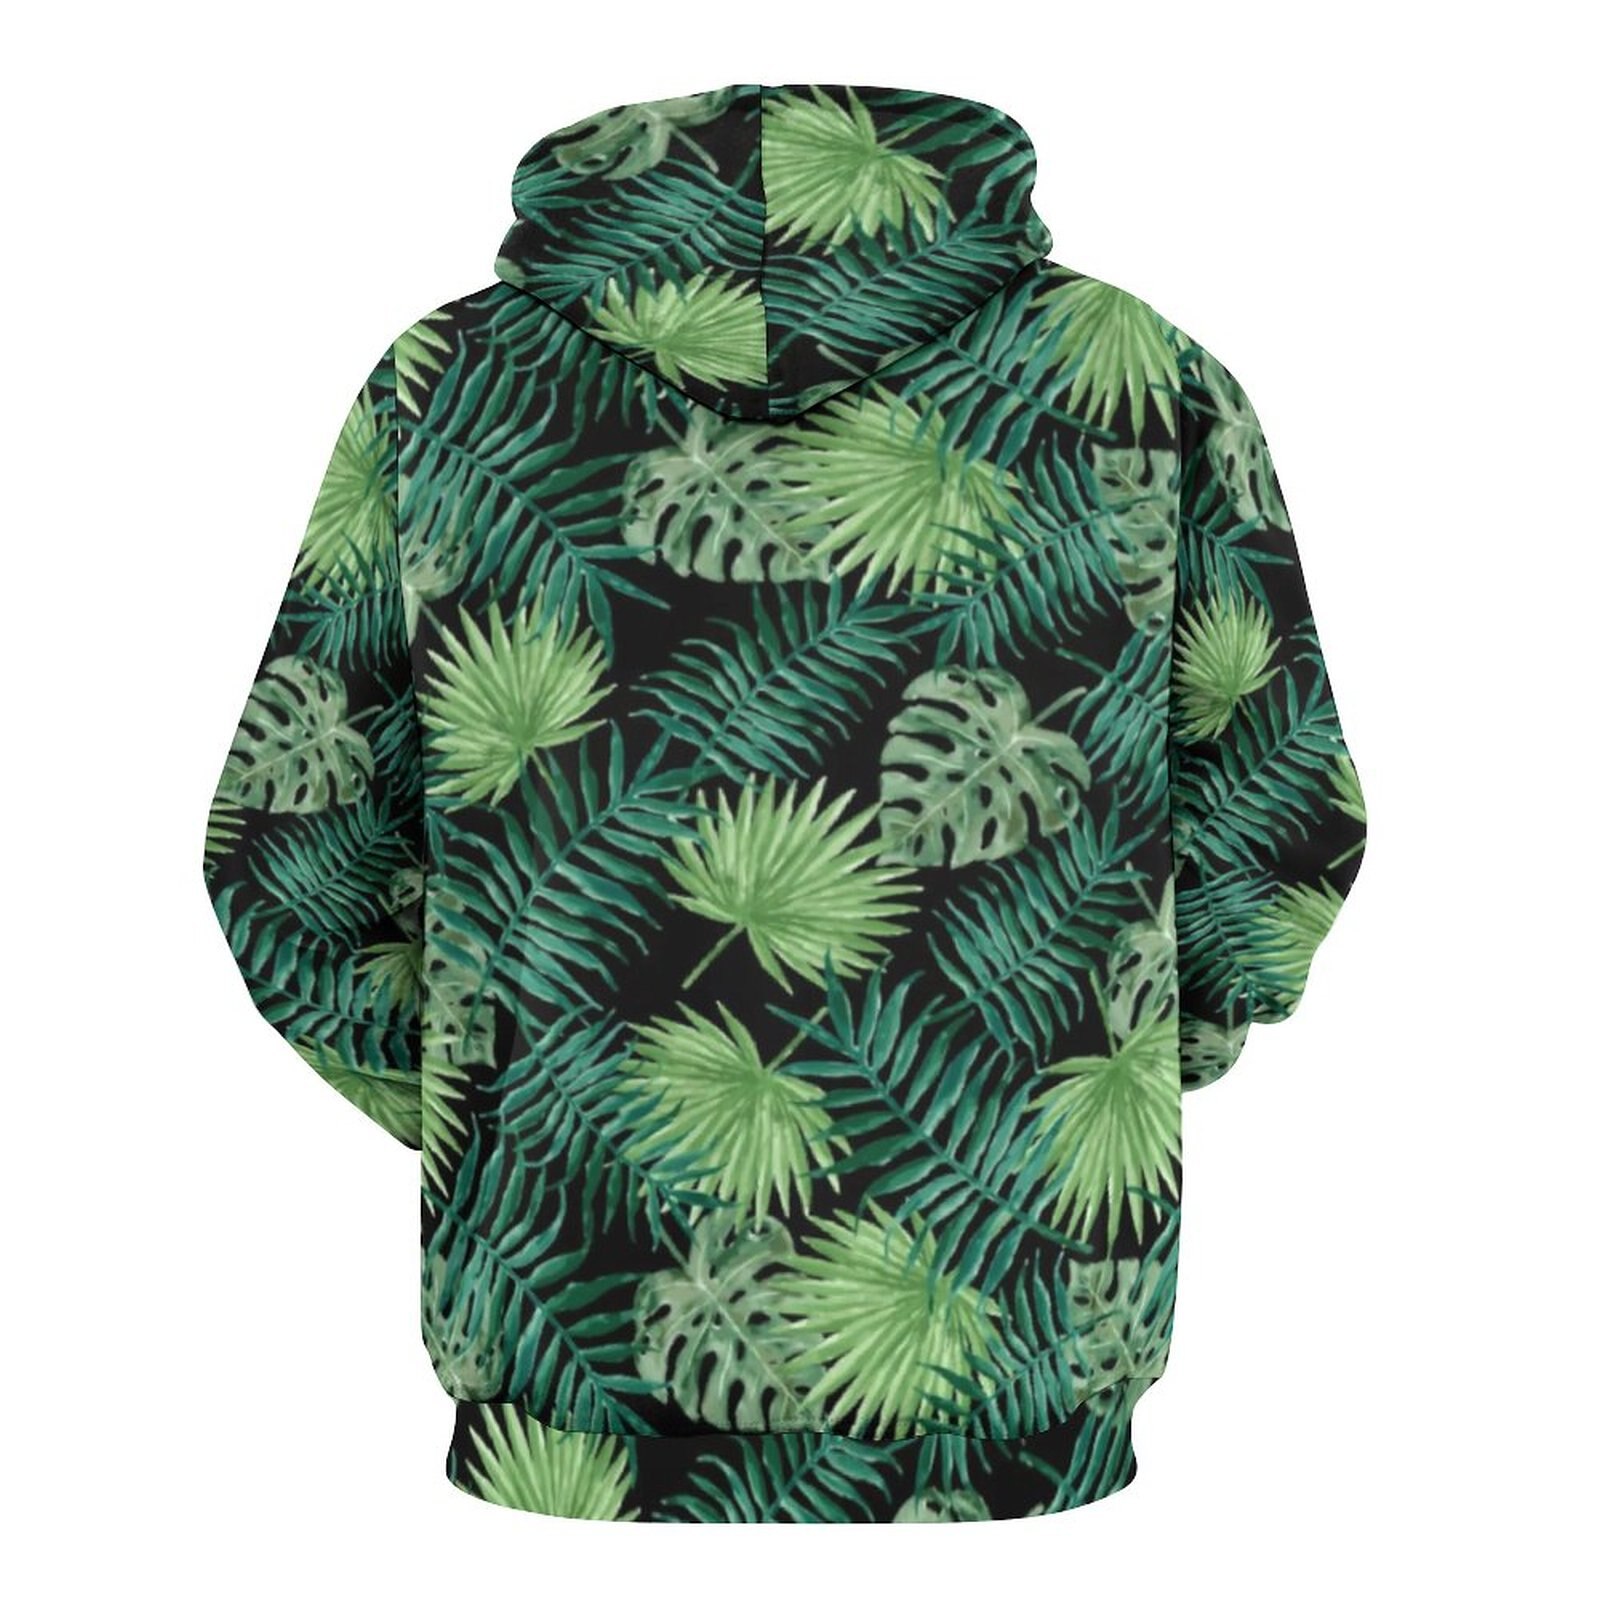 Tropical Palm Leaf Casual Hoodies Green Weed Print Pretty Custom Loose Hoodie Long Sleeve Streetwear Oversize 2 - Weed Hoodie